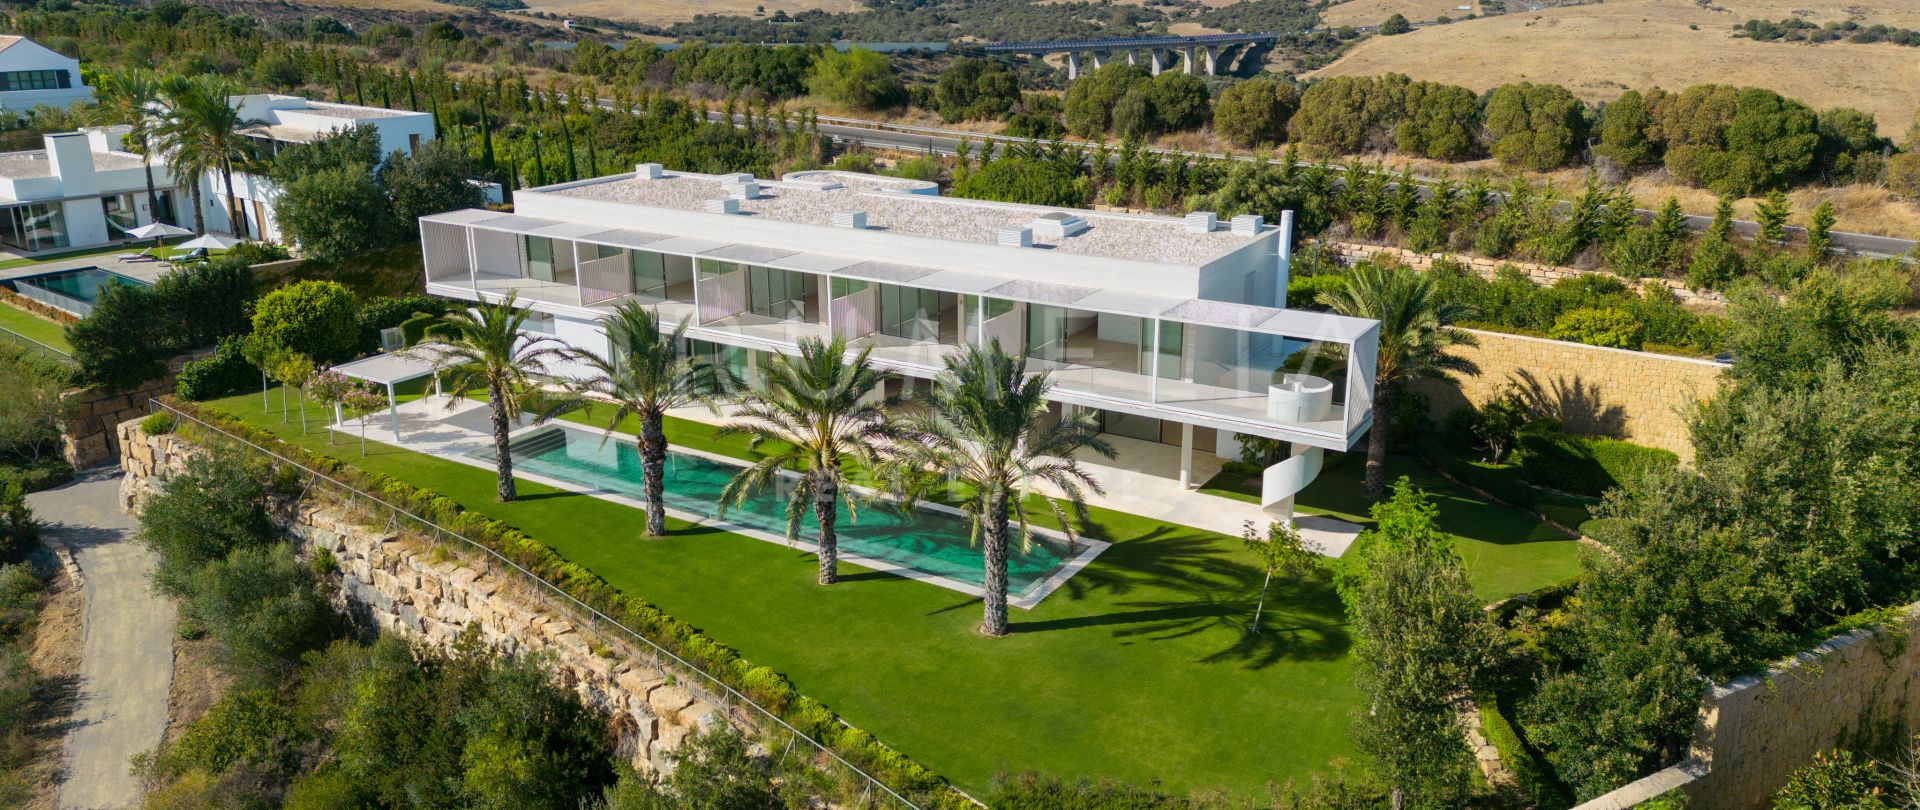 Ny, innovativ golfvilla i frontlinjen Avantgarde luksusvilla med fantastisk utsikt i Finca Cortesin, Casares.